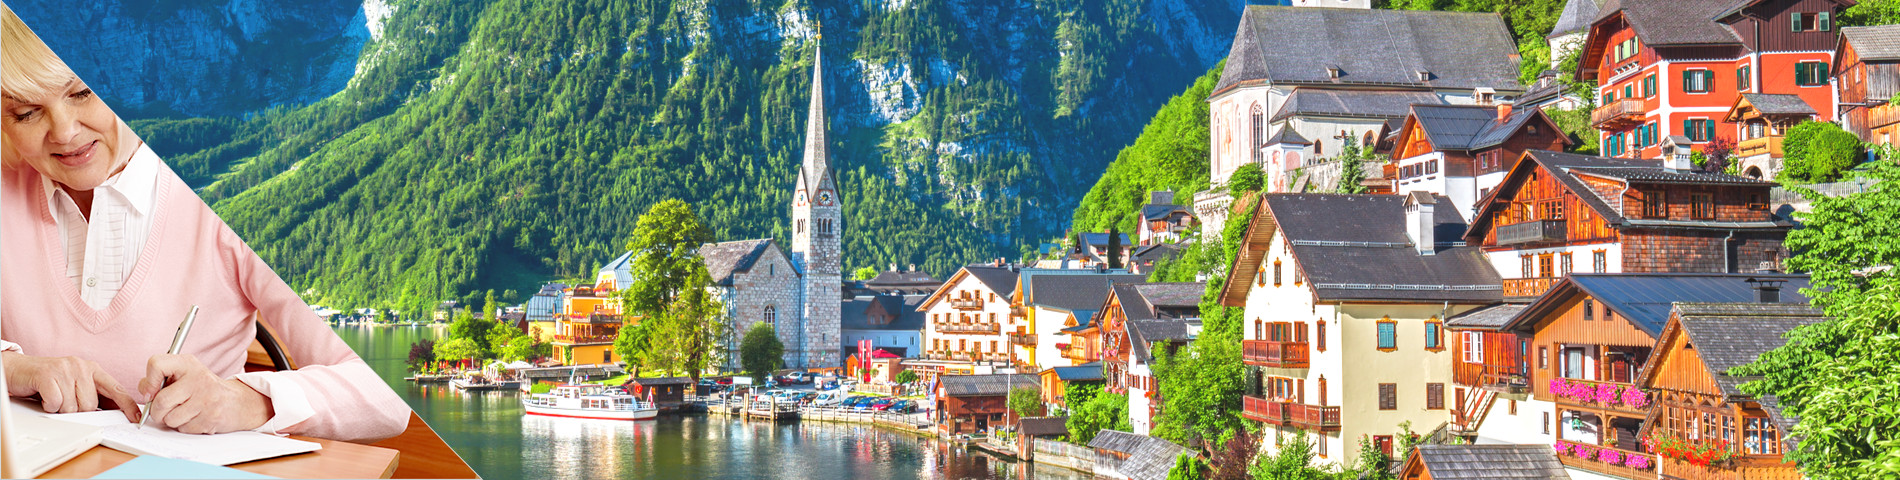 ประเทศสวิตเซอร์แลนด์ - หลักสูตรสำหรับผู้สูงอายุ (50 ปีขึ้นไป)